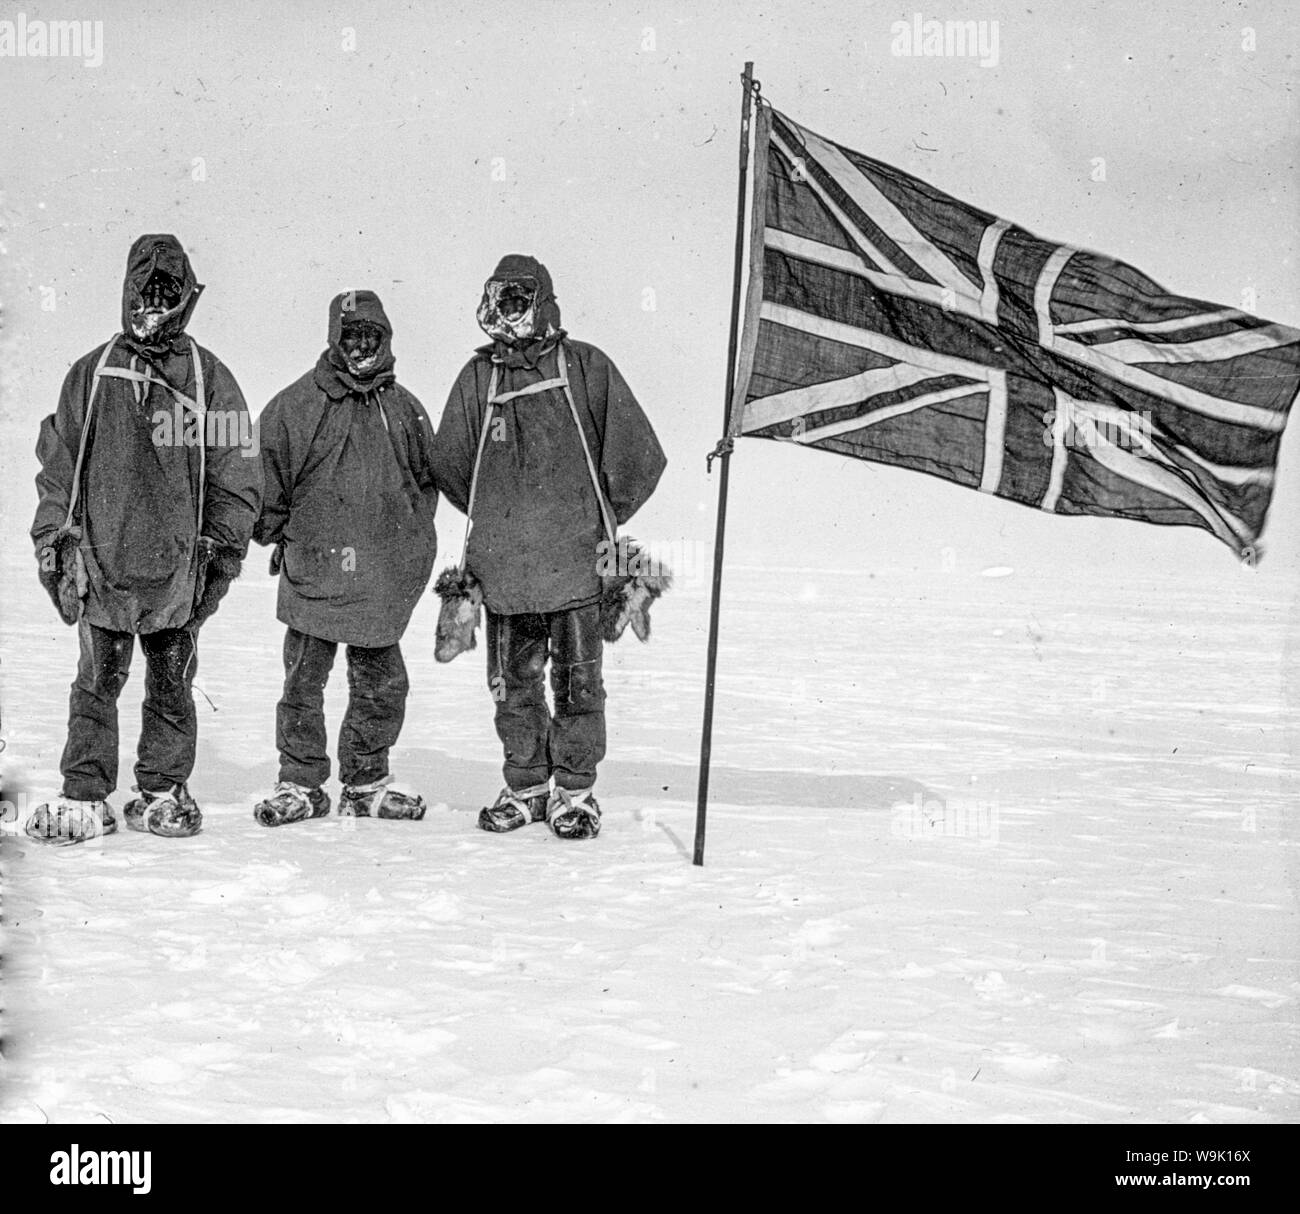 Adams, sauvage et Shackleton en South point sur l'expédition Nimrod vers le pôle Sud, 1908-1909, photographie Banque D'Images